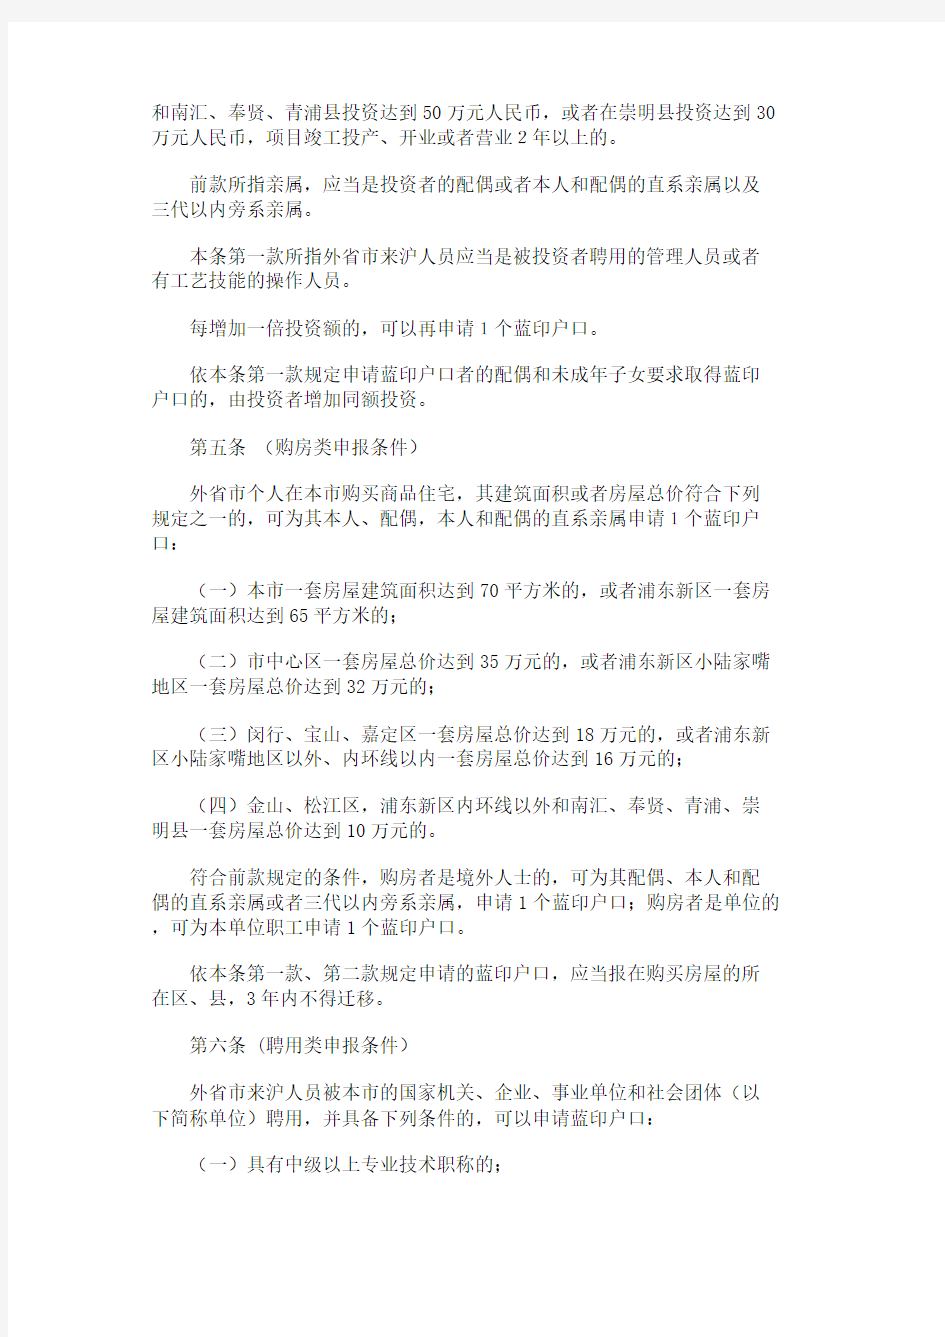 上海市蓝印户口管理暂行规定